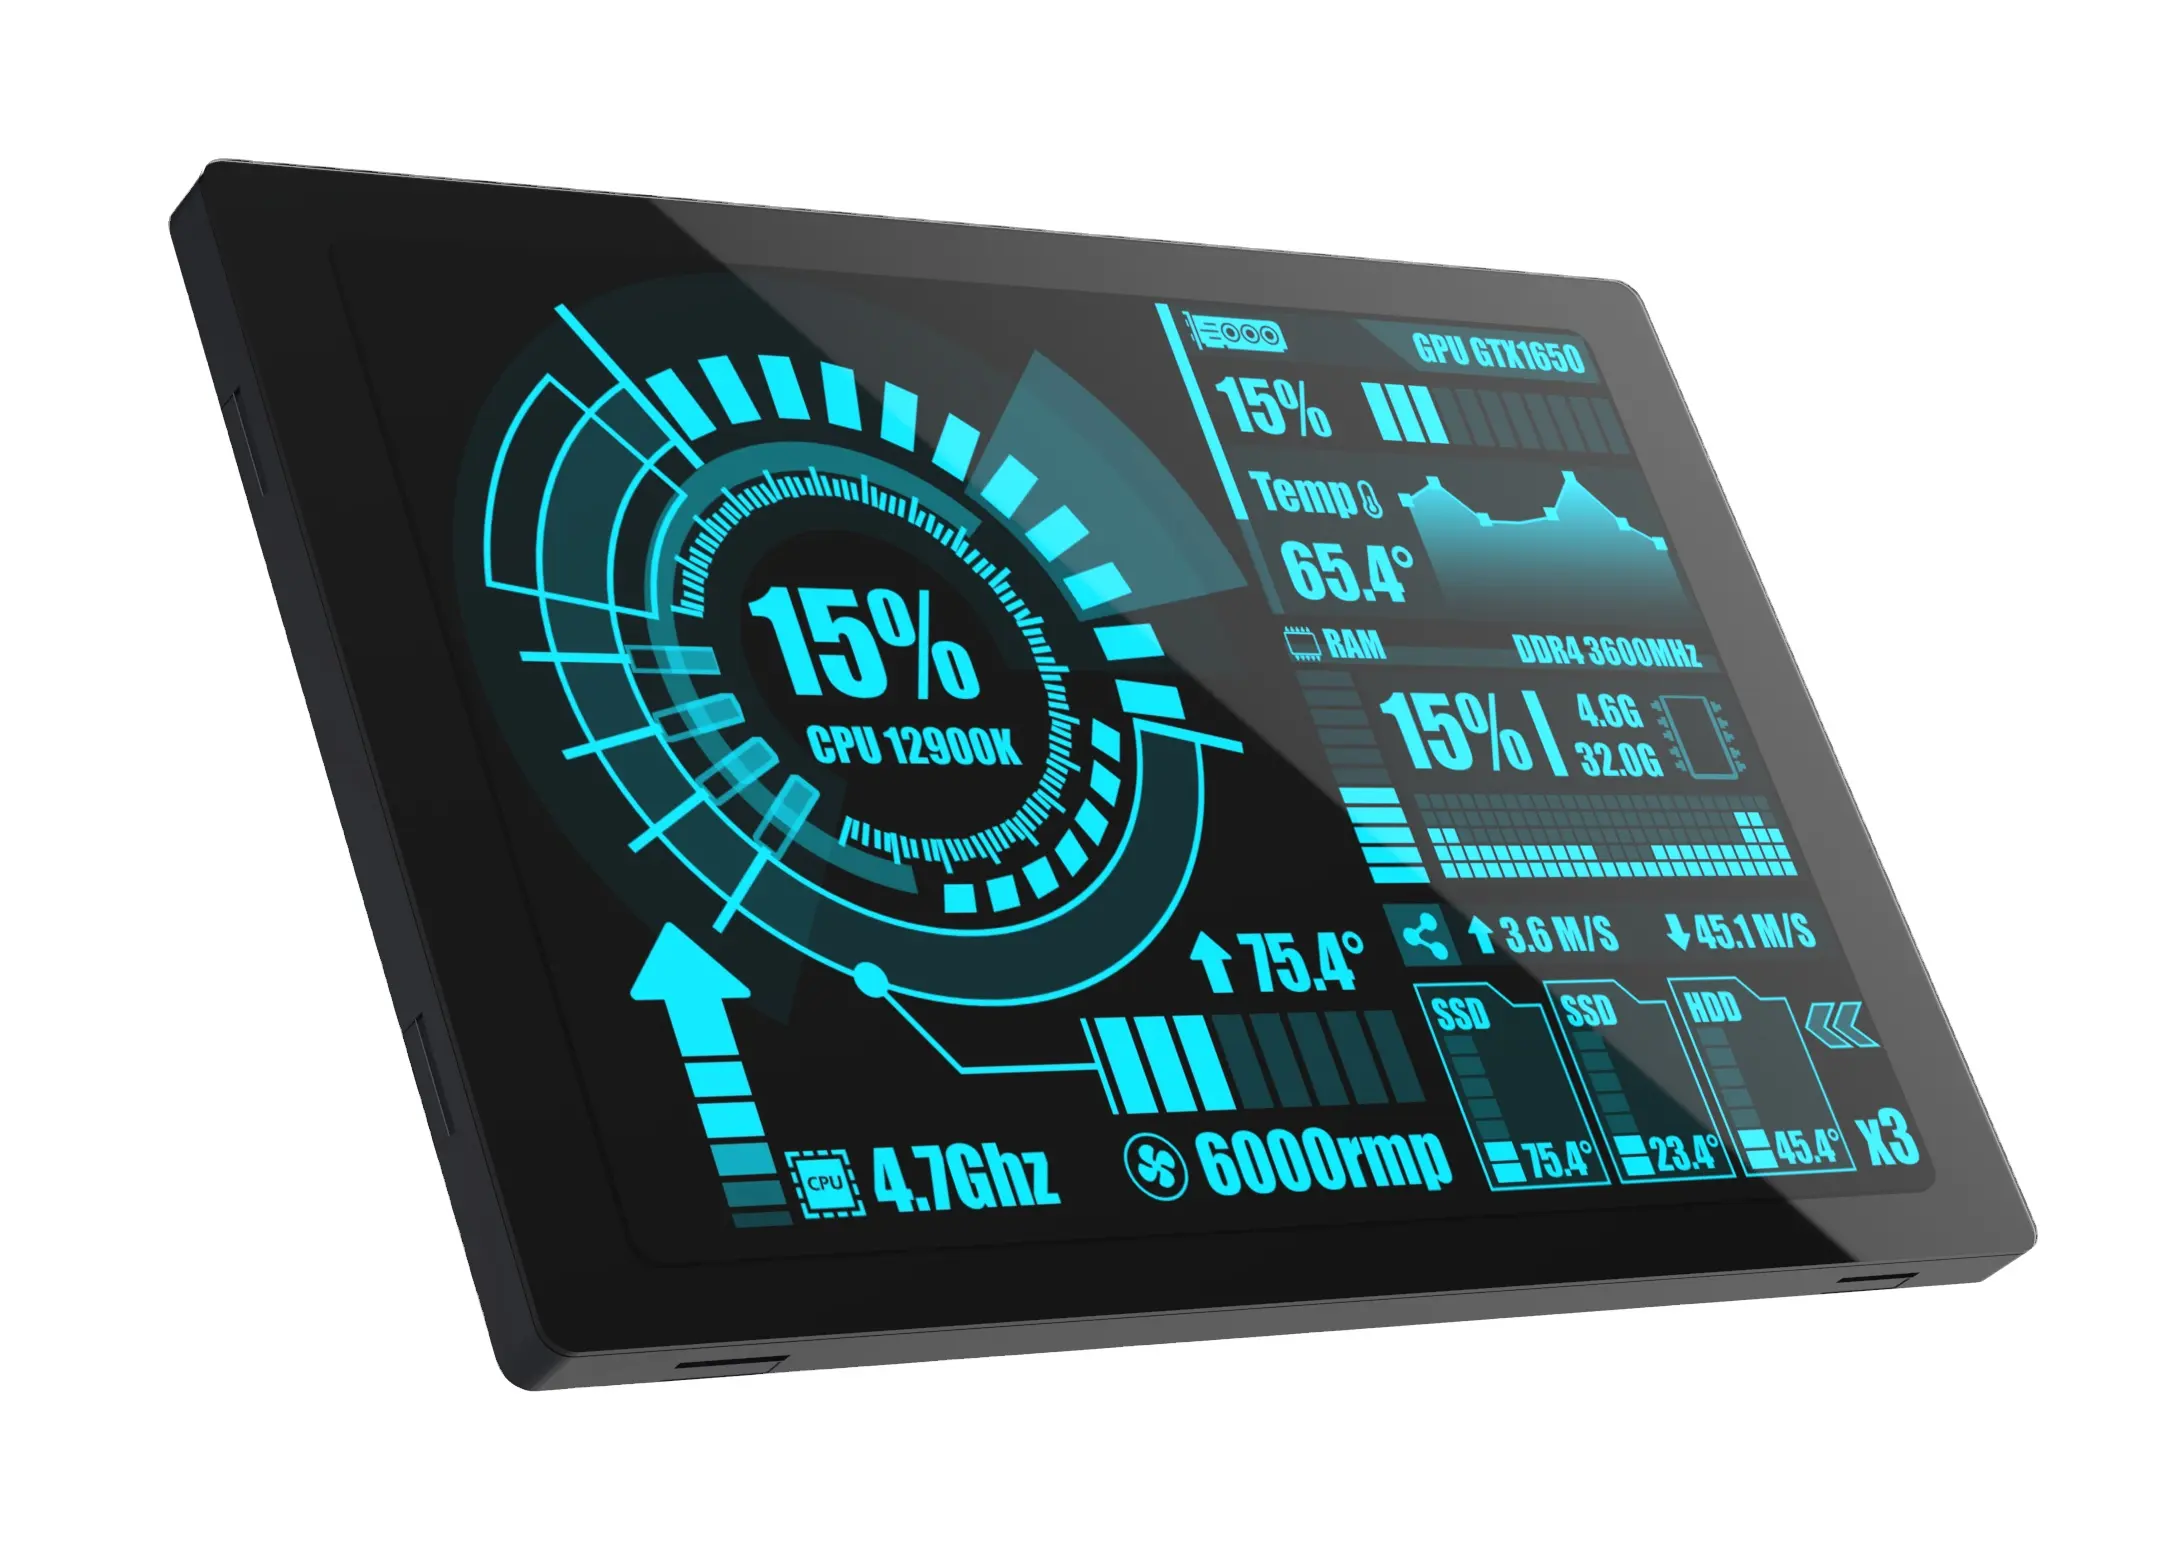 Atualização SC01 PLUS 16MB hmi esp32 lcd evb board com 3,5 LCD IPS Display Touch Screen monitor para controle de cozinha termostato